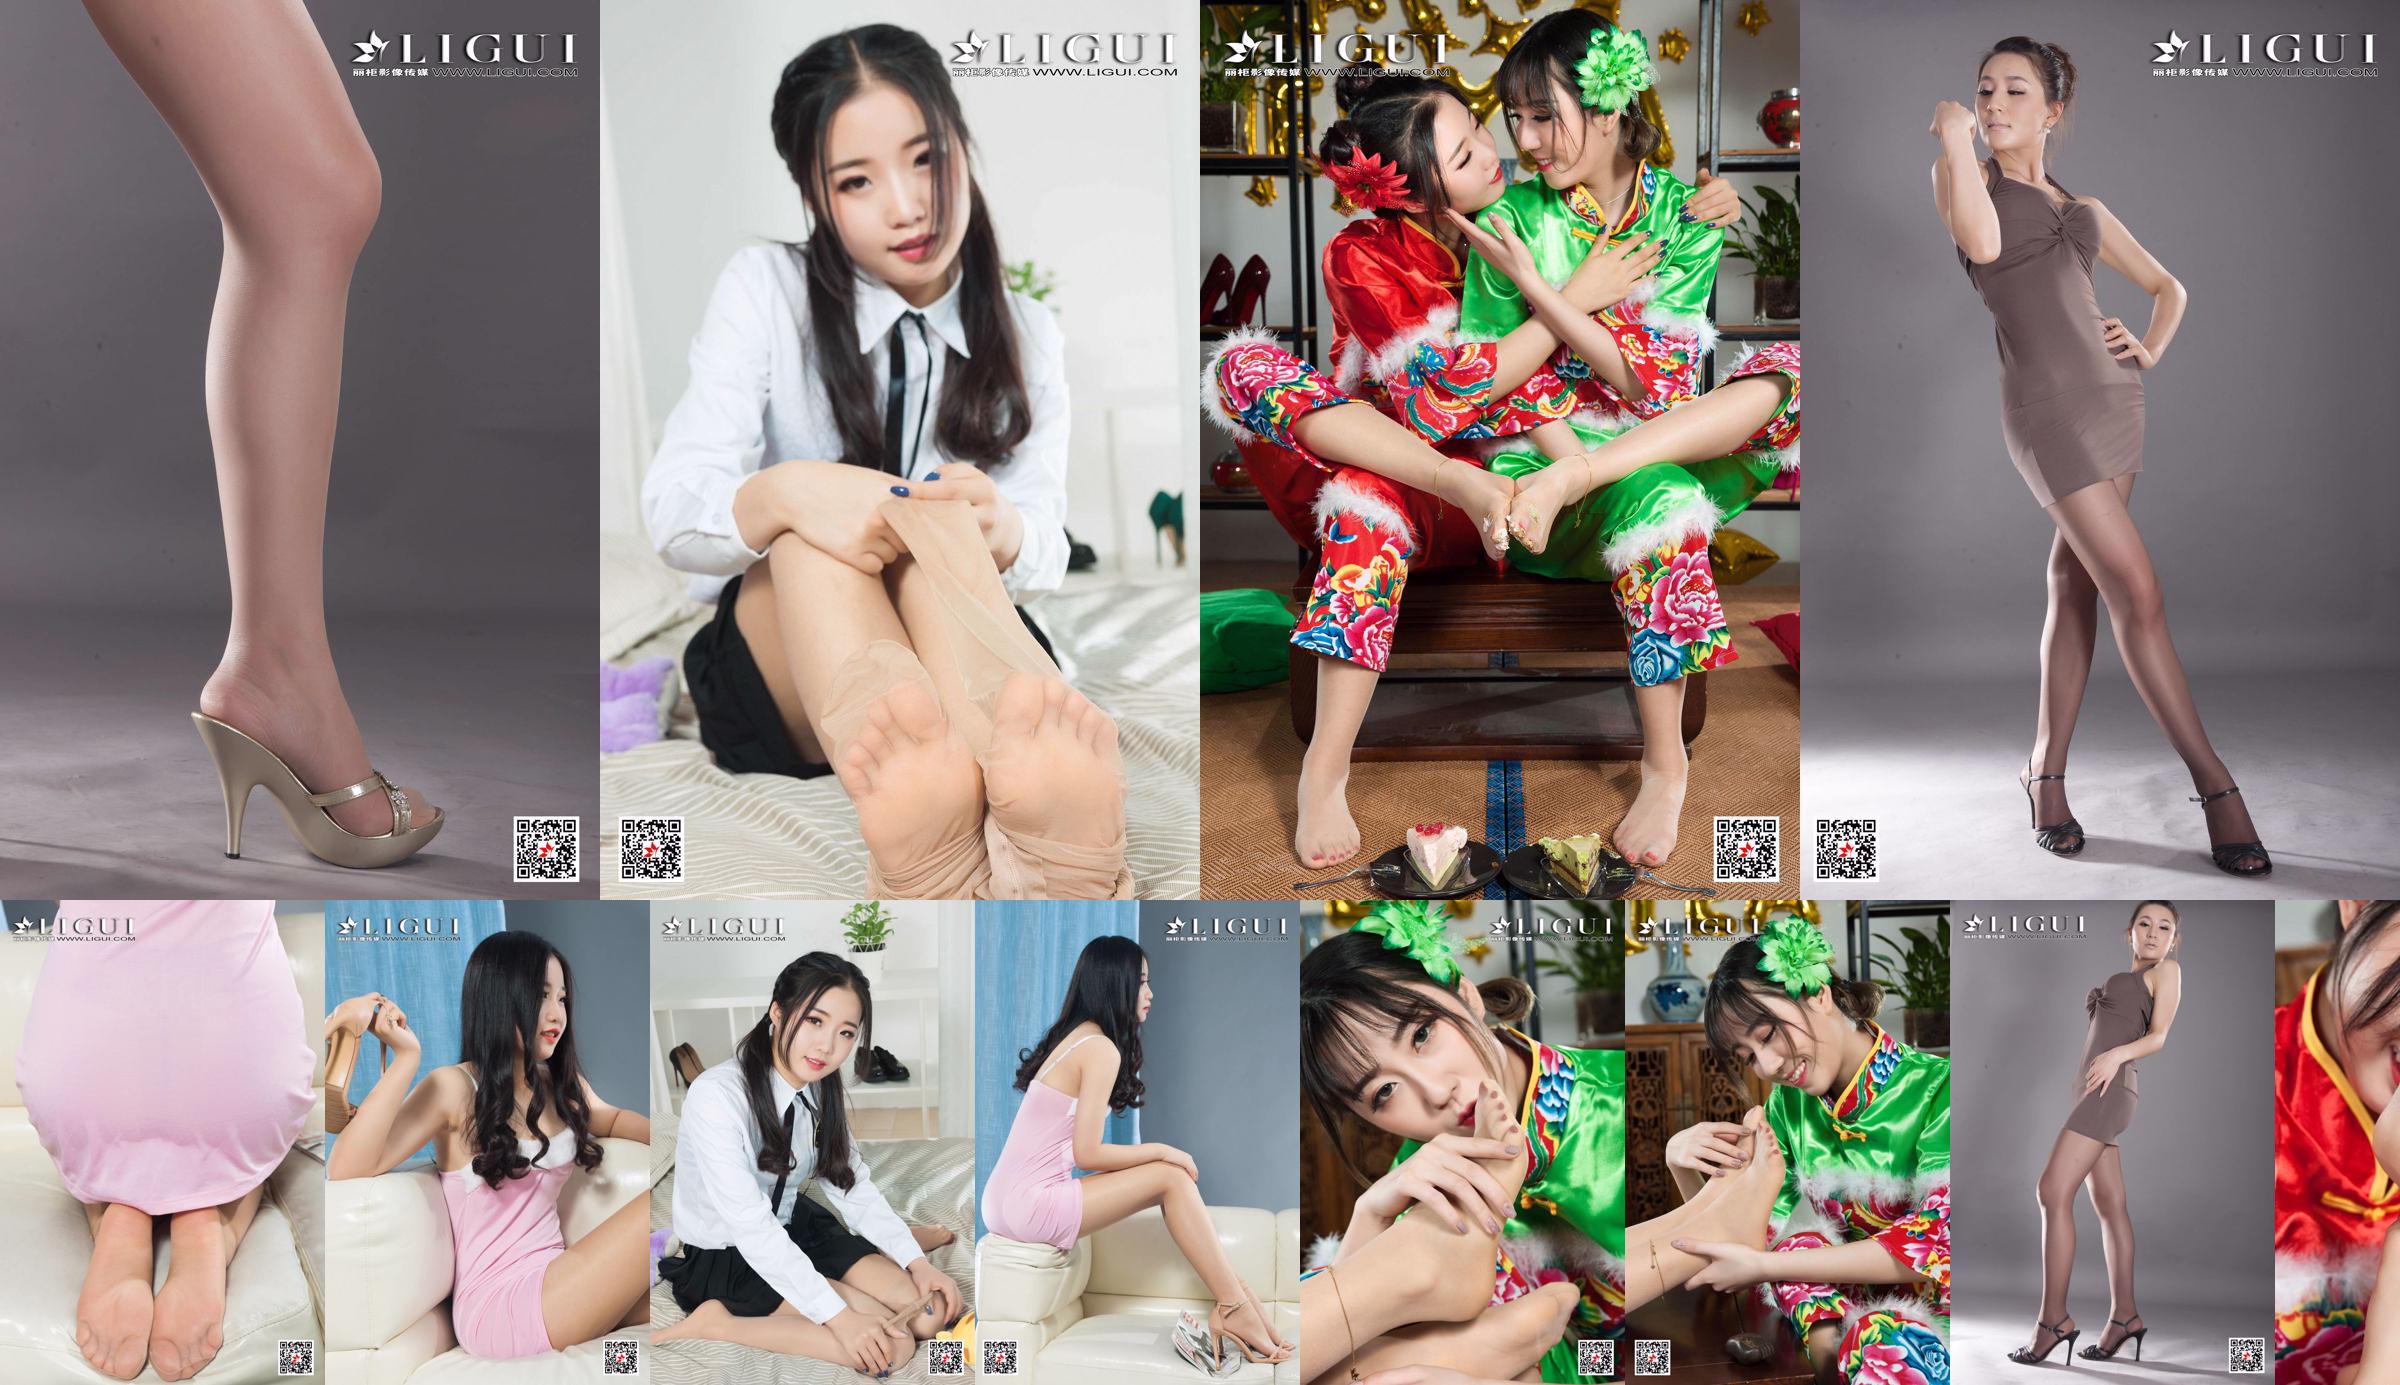 [丽柜Ligui] Model Yuanyuan "Studio Shot Beauty" No.3a7d8f Page 4